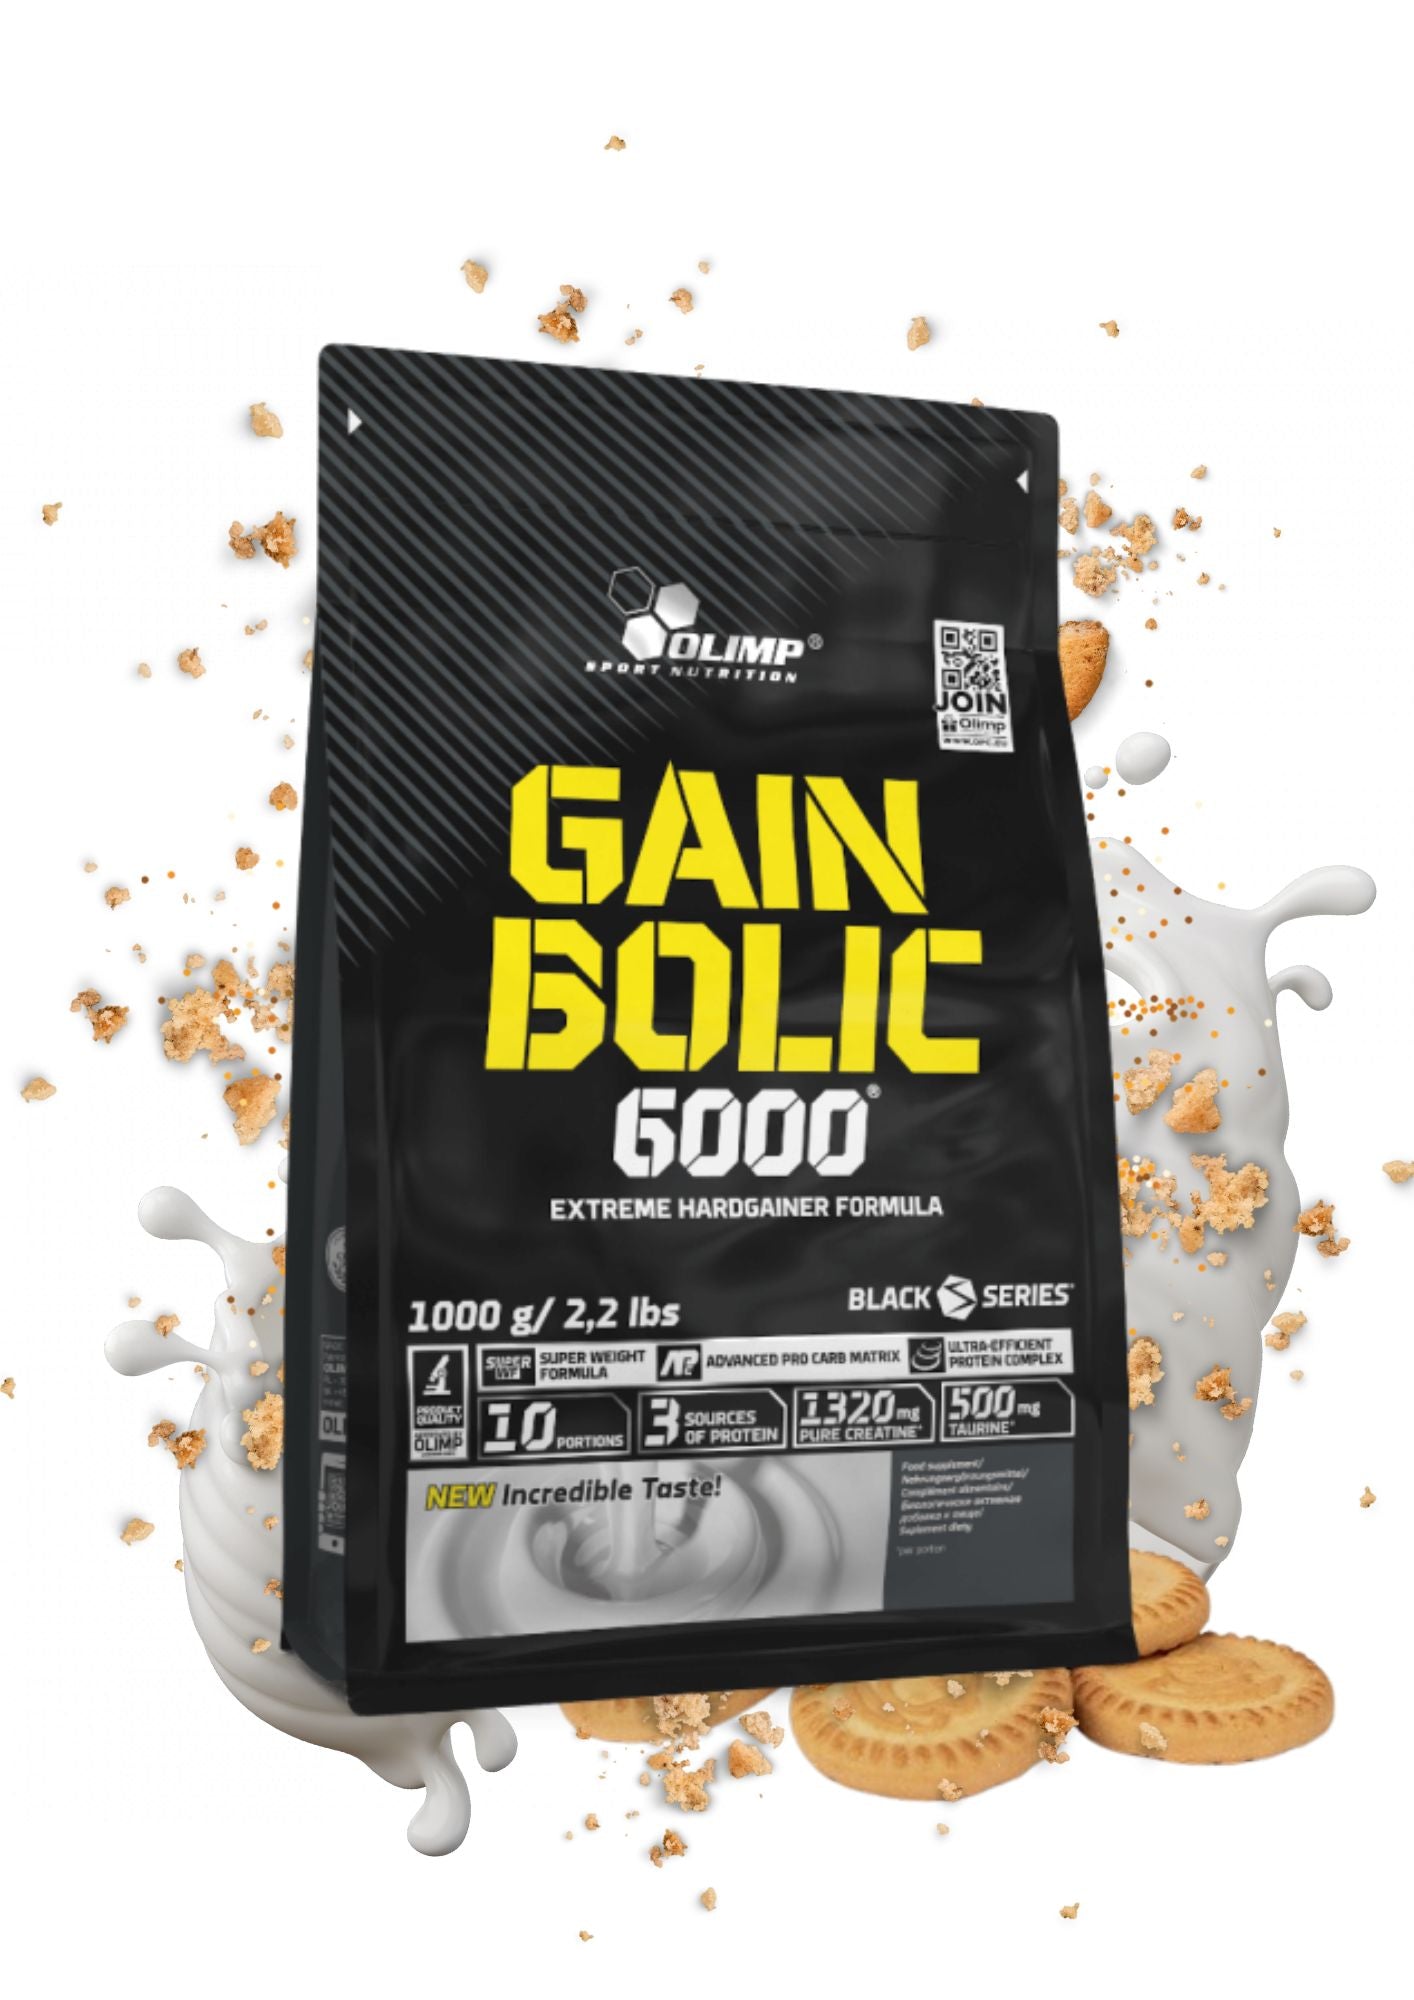 Gainer - Protéine de Prise de Masse | GAIN BOLIC 6000 1KG | Cookies Cream ( Biscuit )